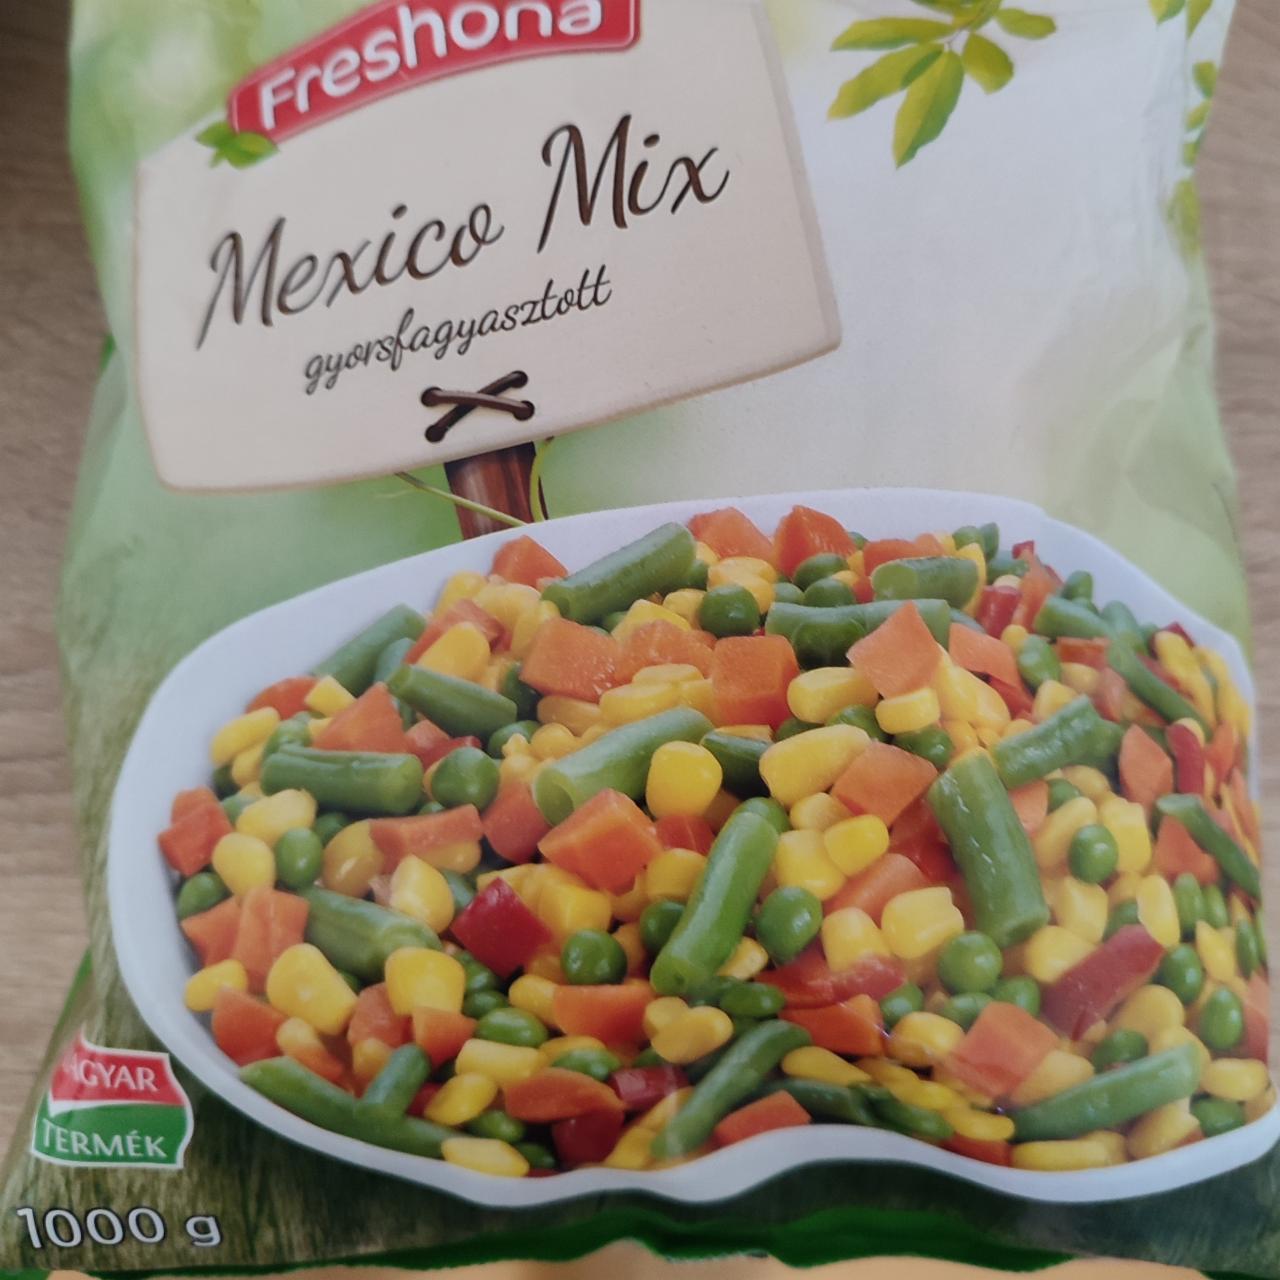 Фото - Овощи замороженные Mexico Mix Freshona